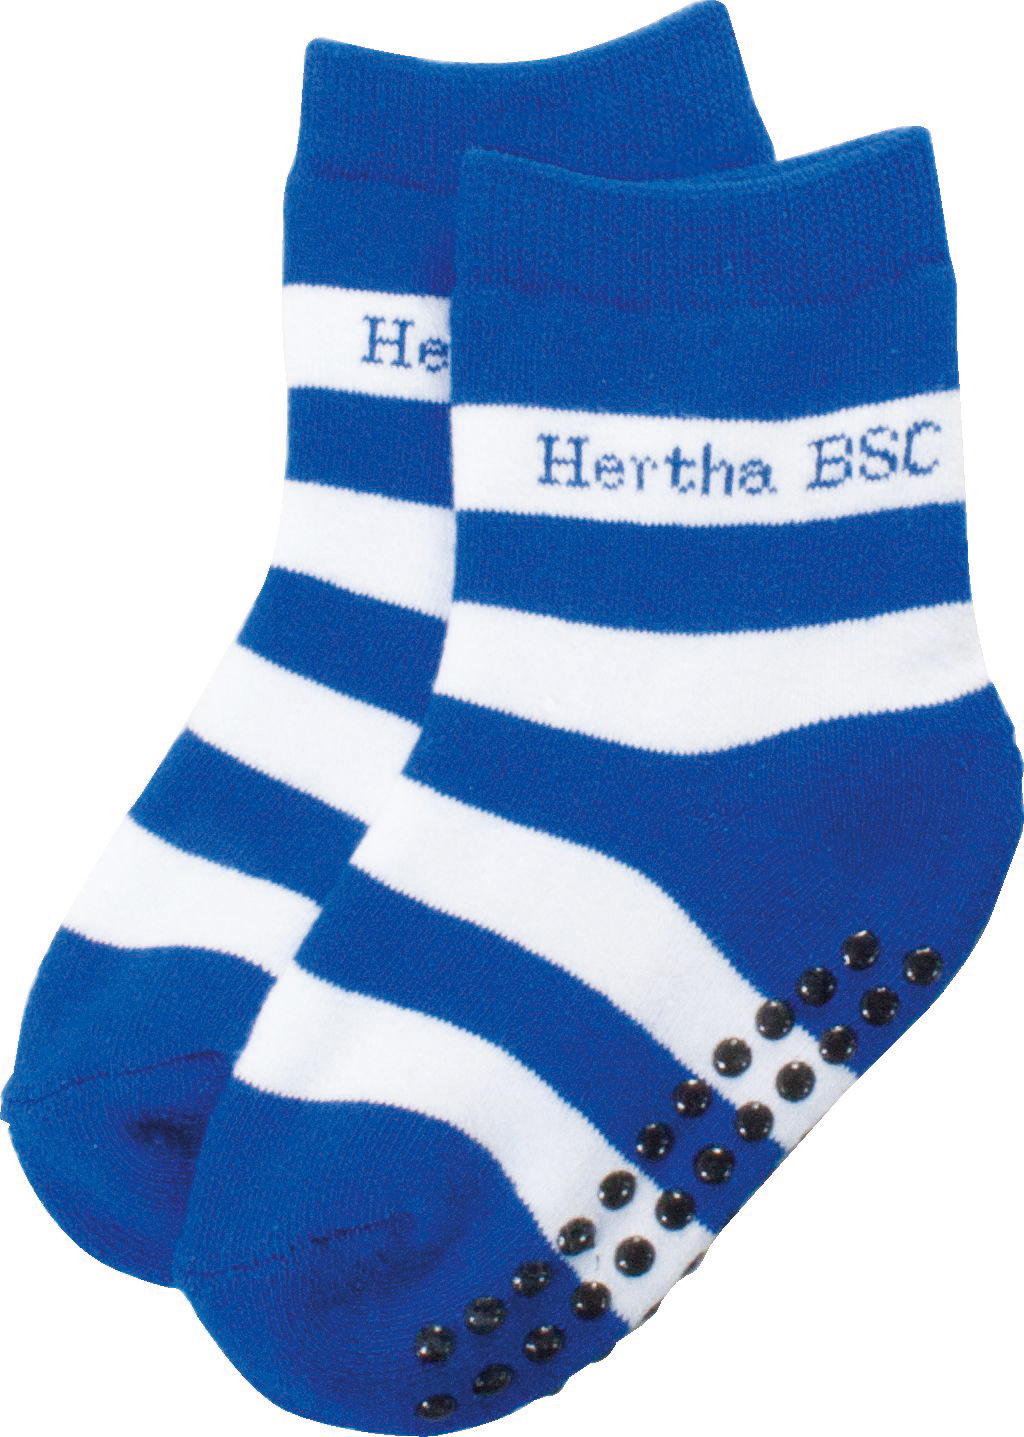 HERTHA BSC Hertha BSC Berlin Socken